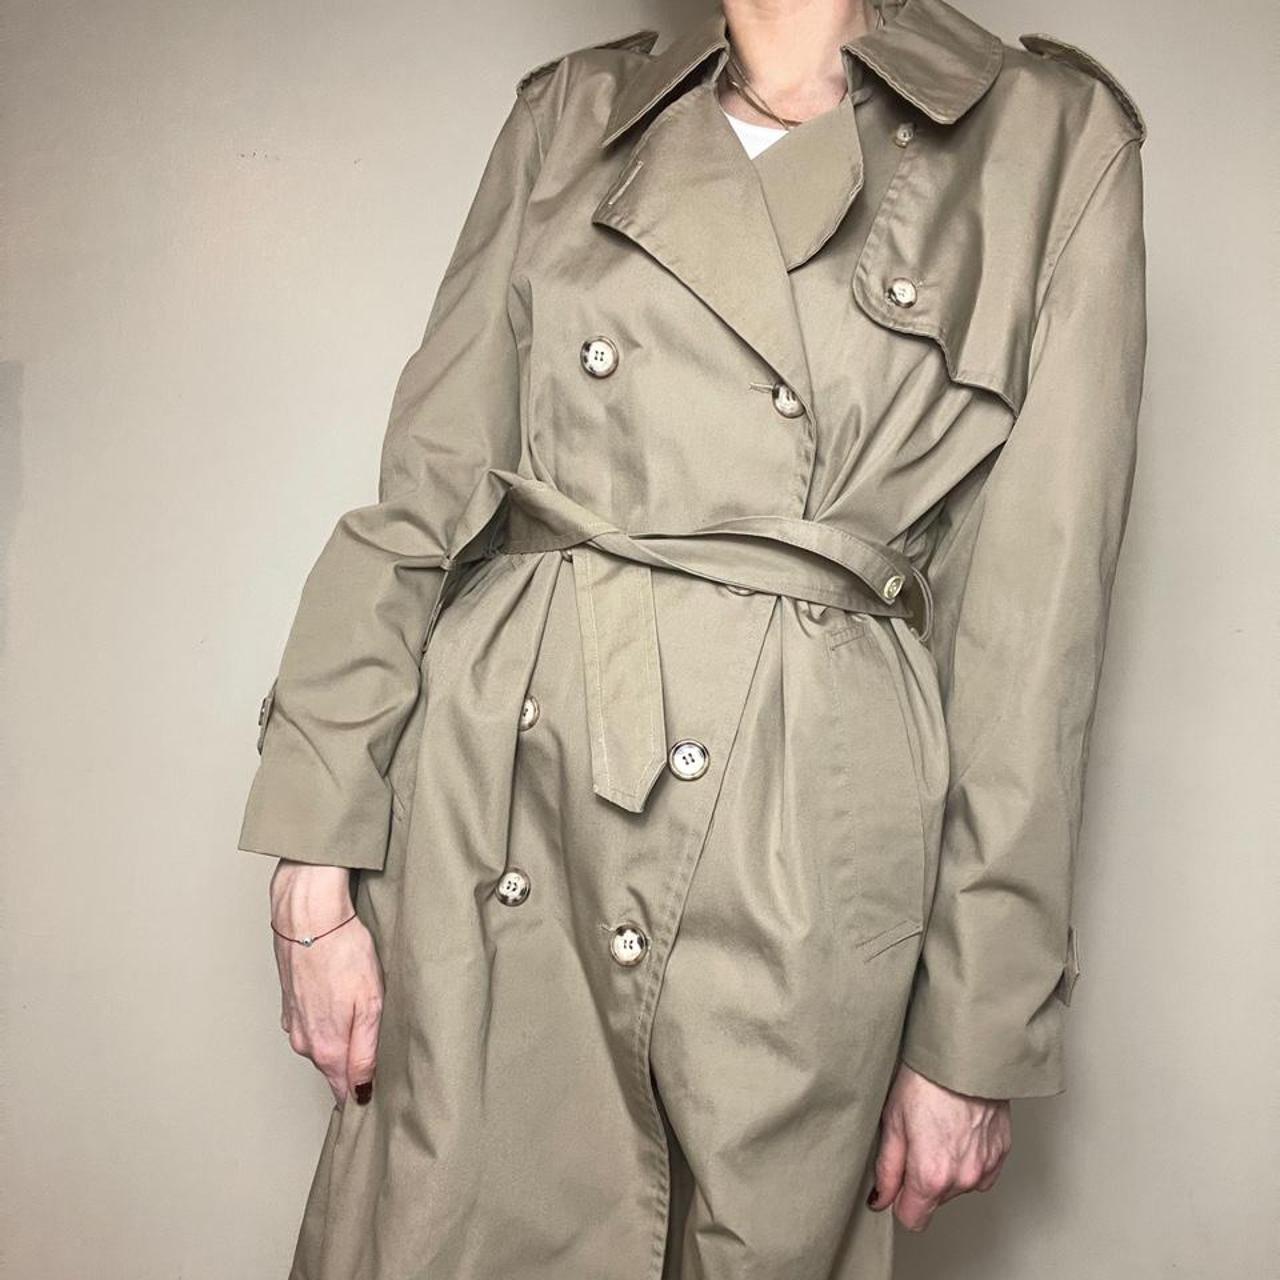 Product Image 2 - Vintage classic khaki trench coat.